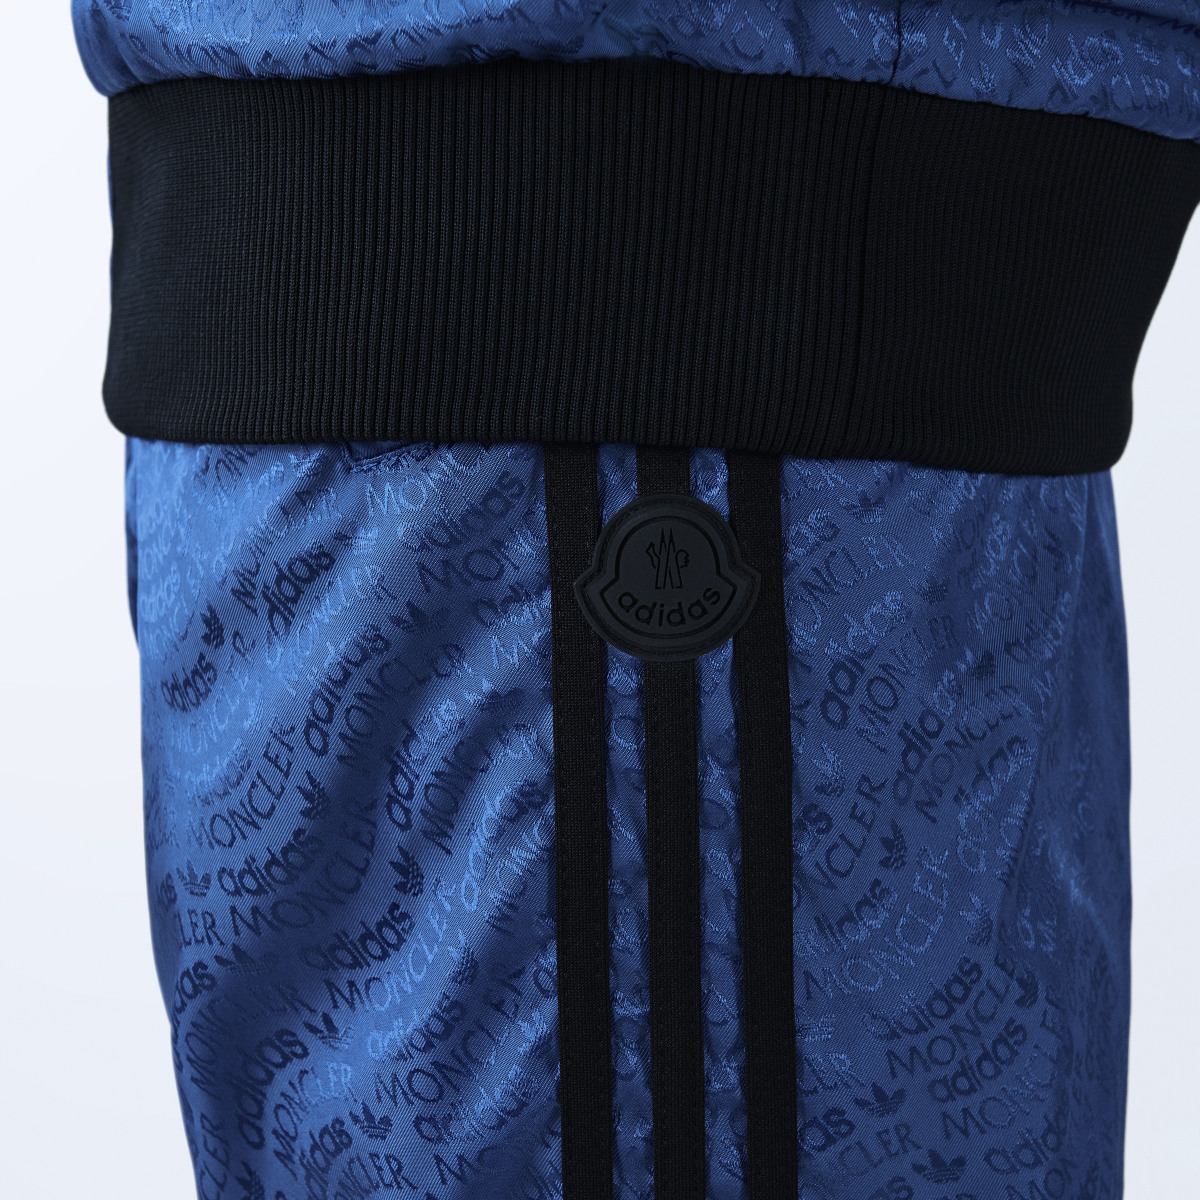 Adidas Pantalón reversible Seelos Moncler x adidas Originals. 5